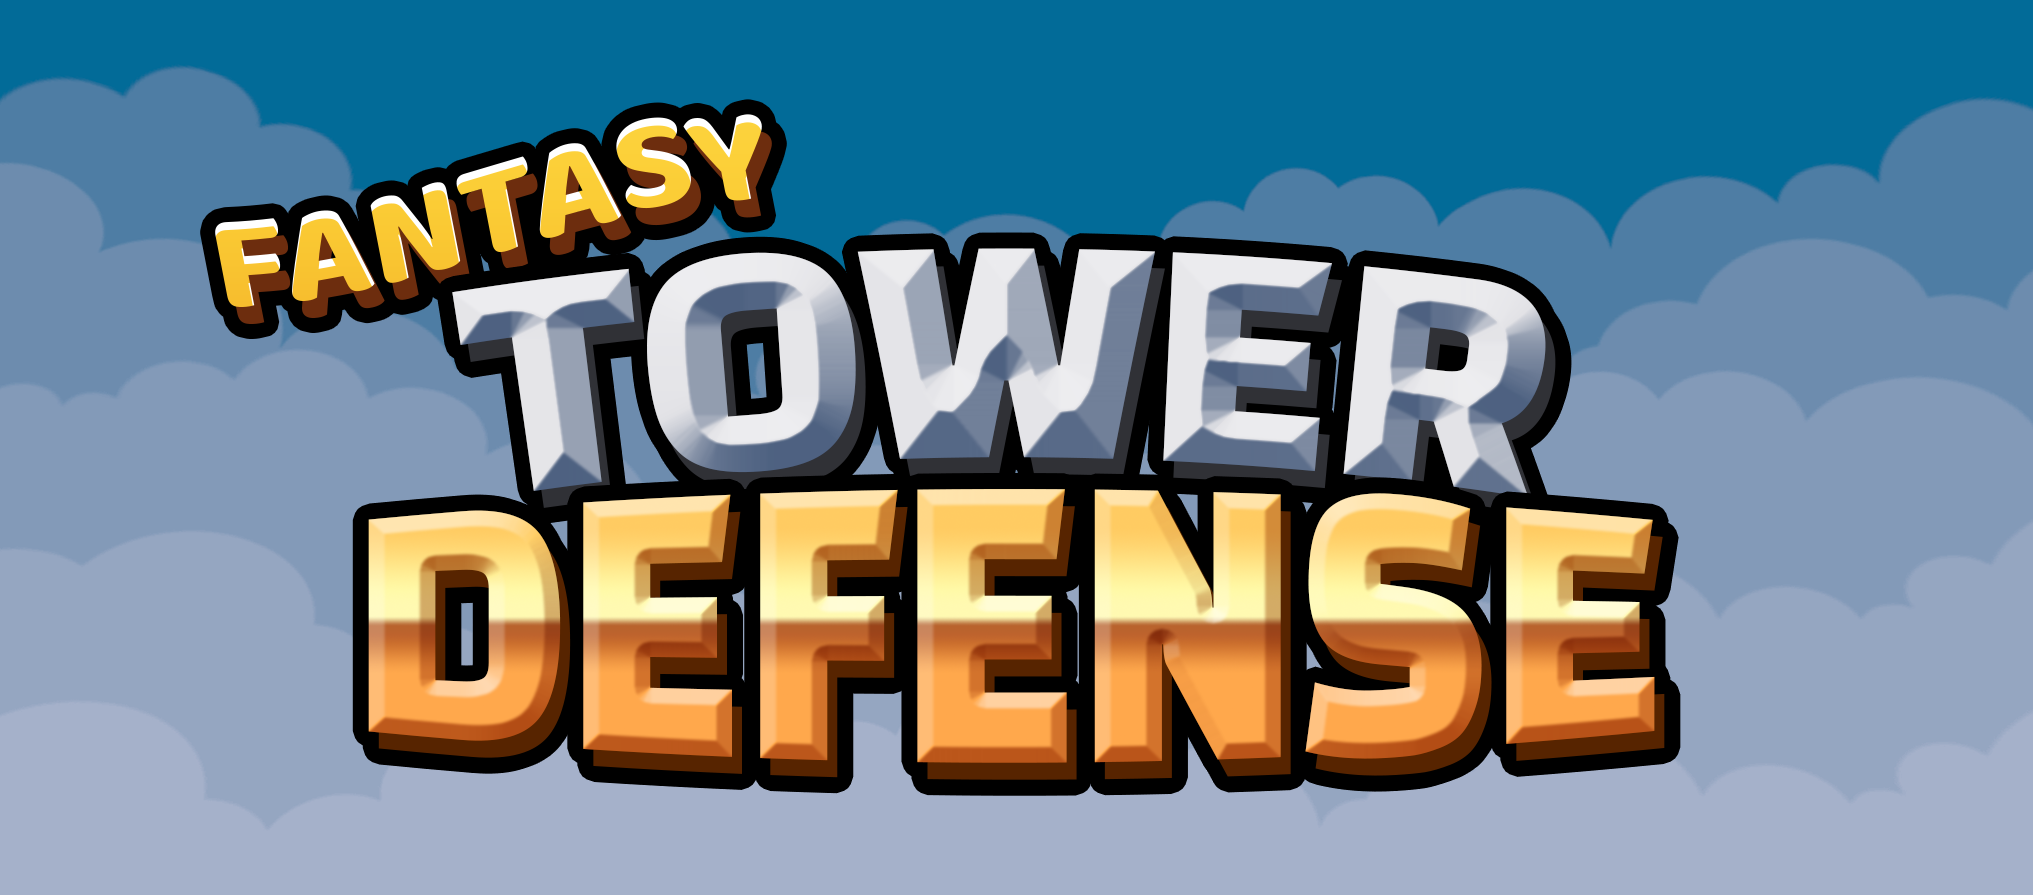 Fantasy Tower Defense